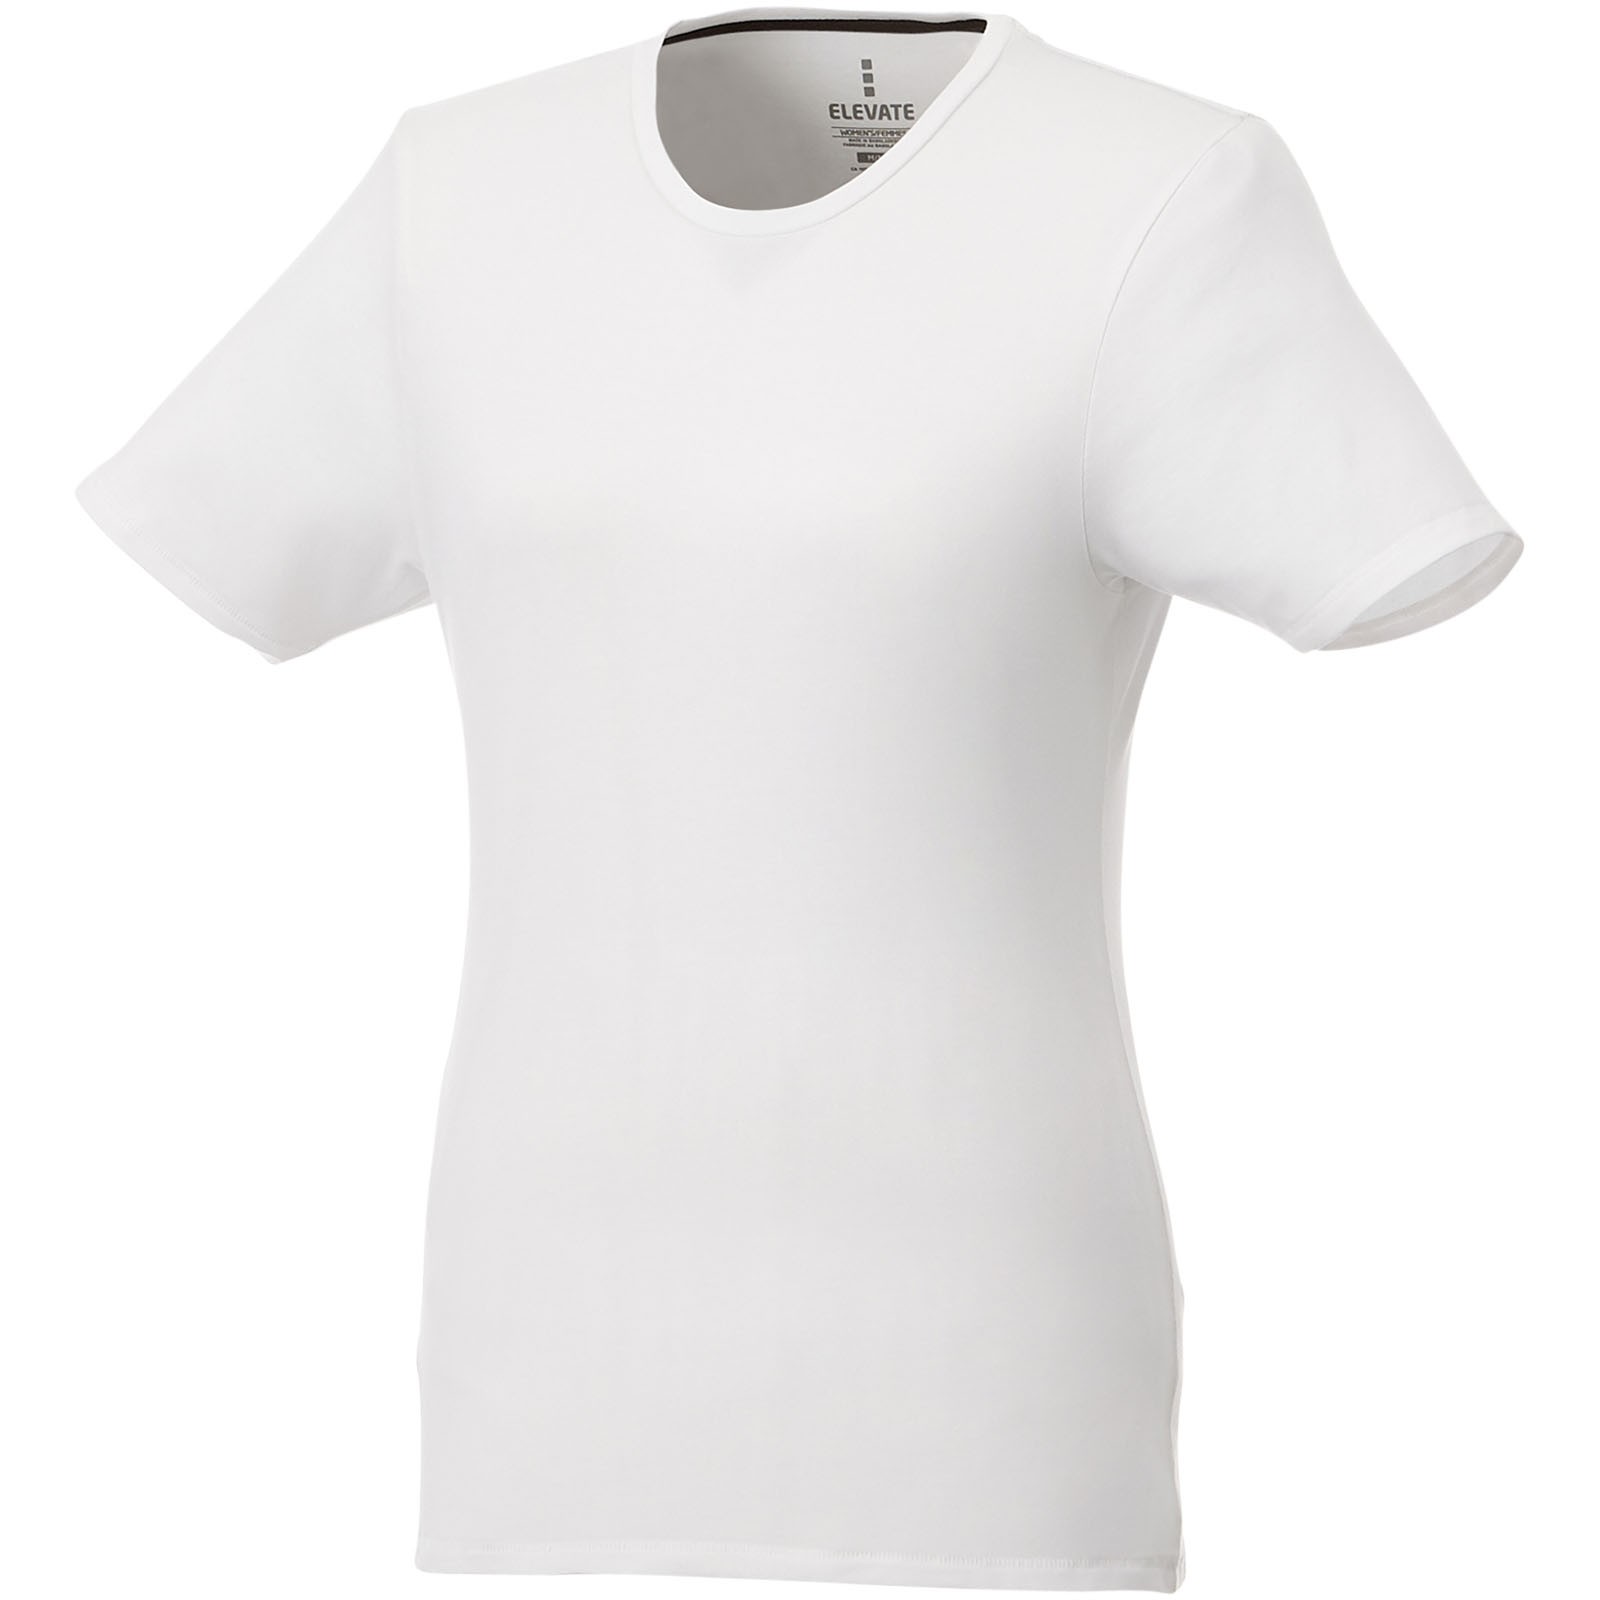 Camisetade manga corta orgánica para mujer "Balfour" - Blanco / M